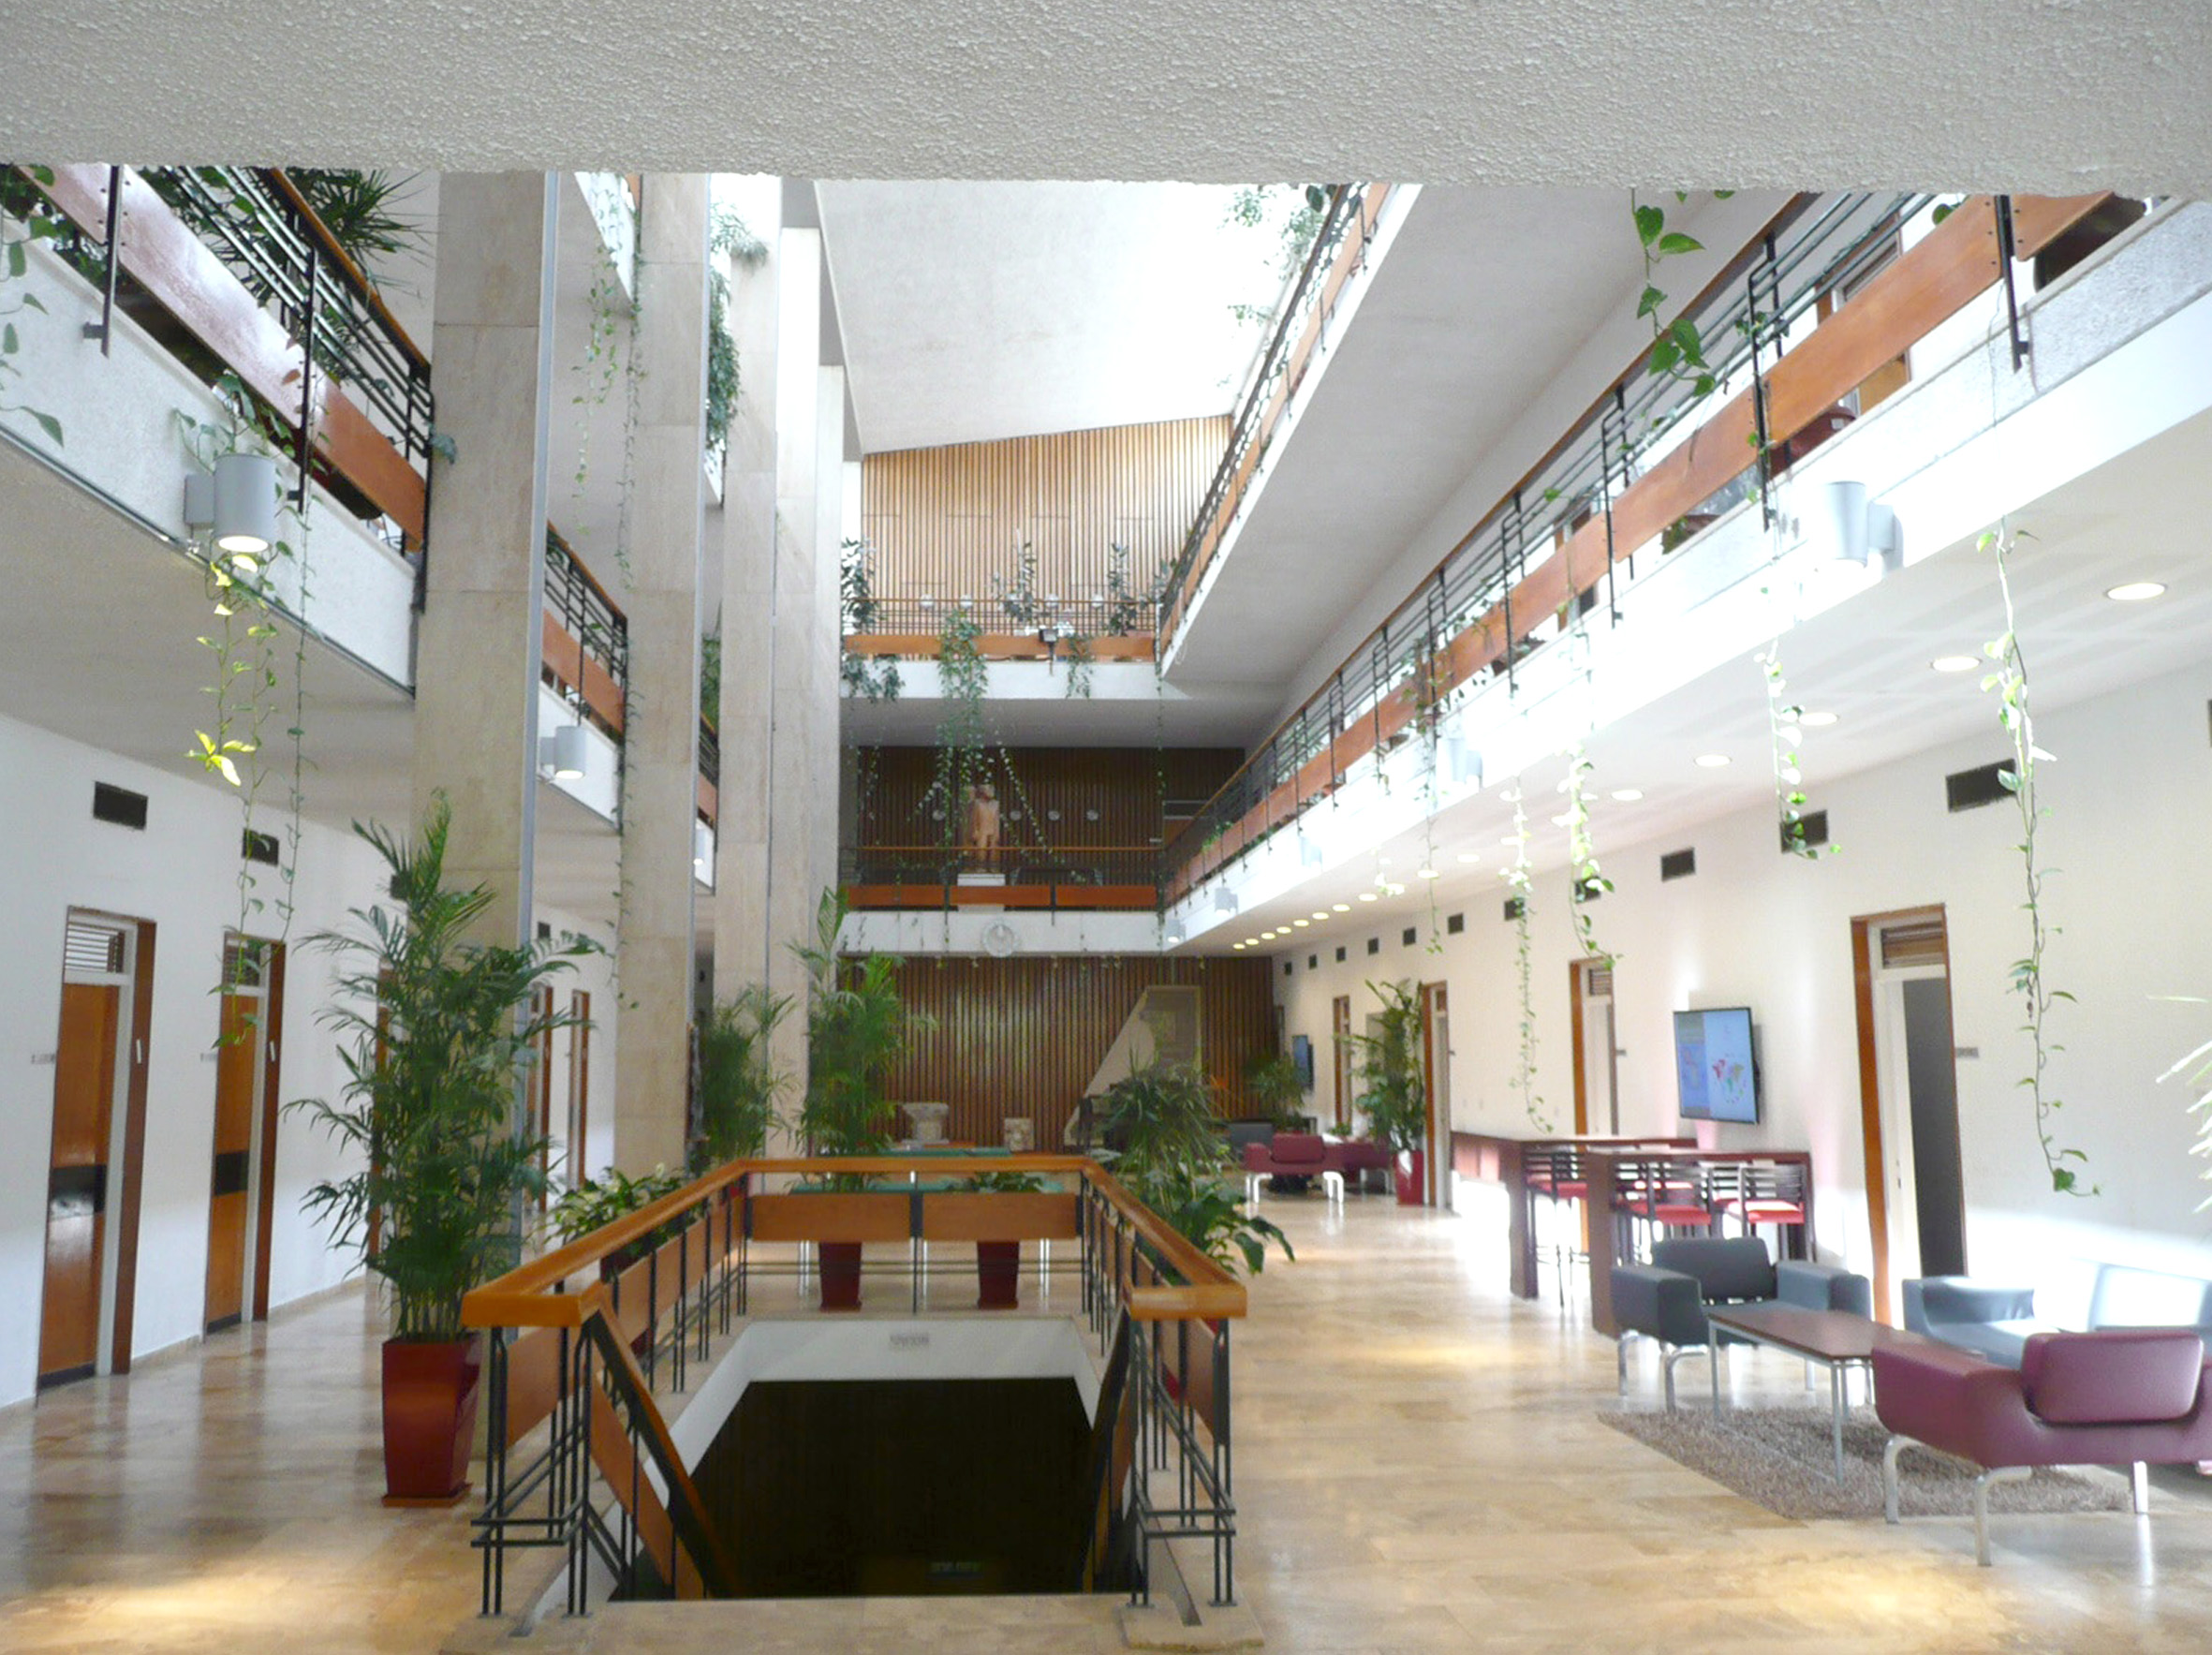 Inside the IAS building